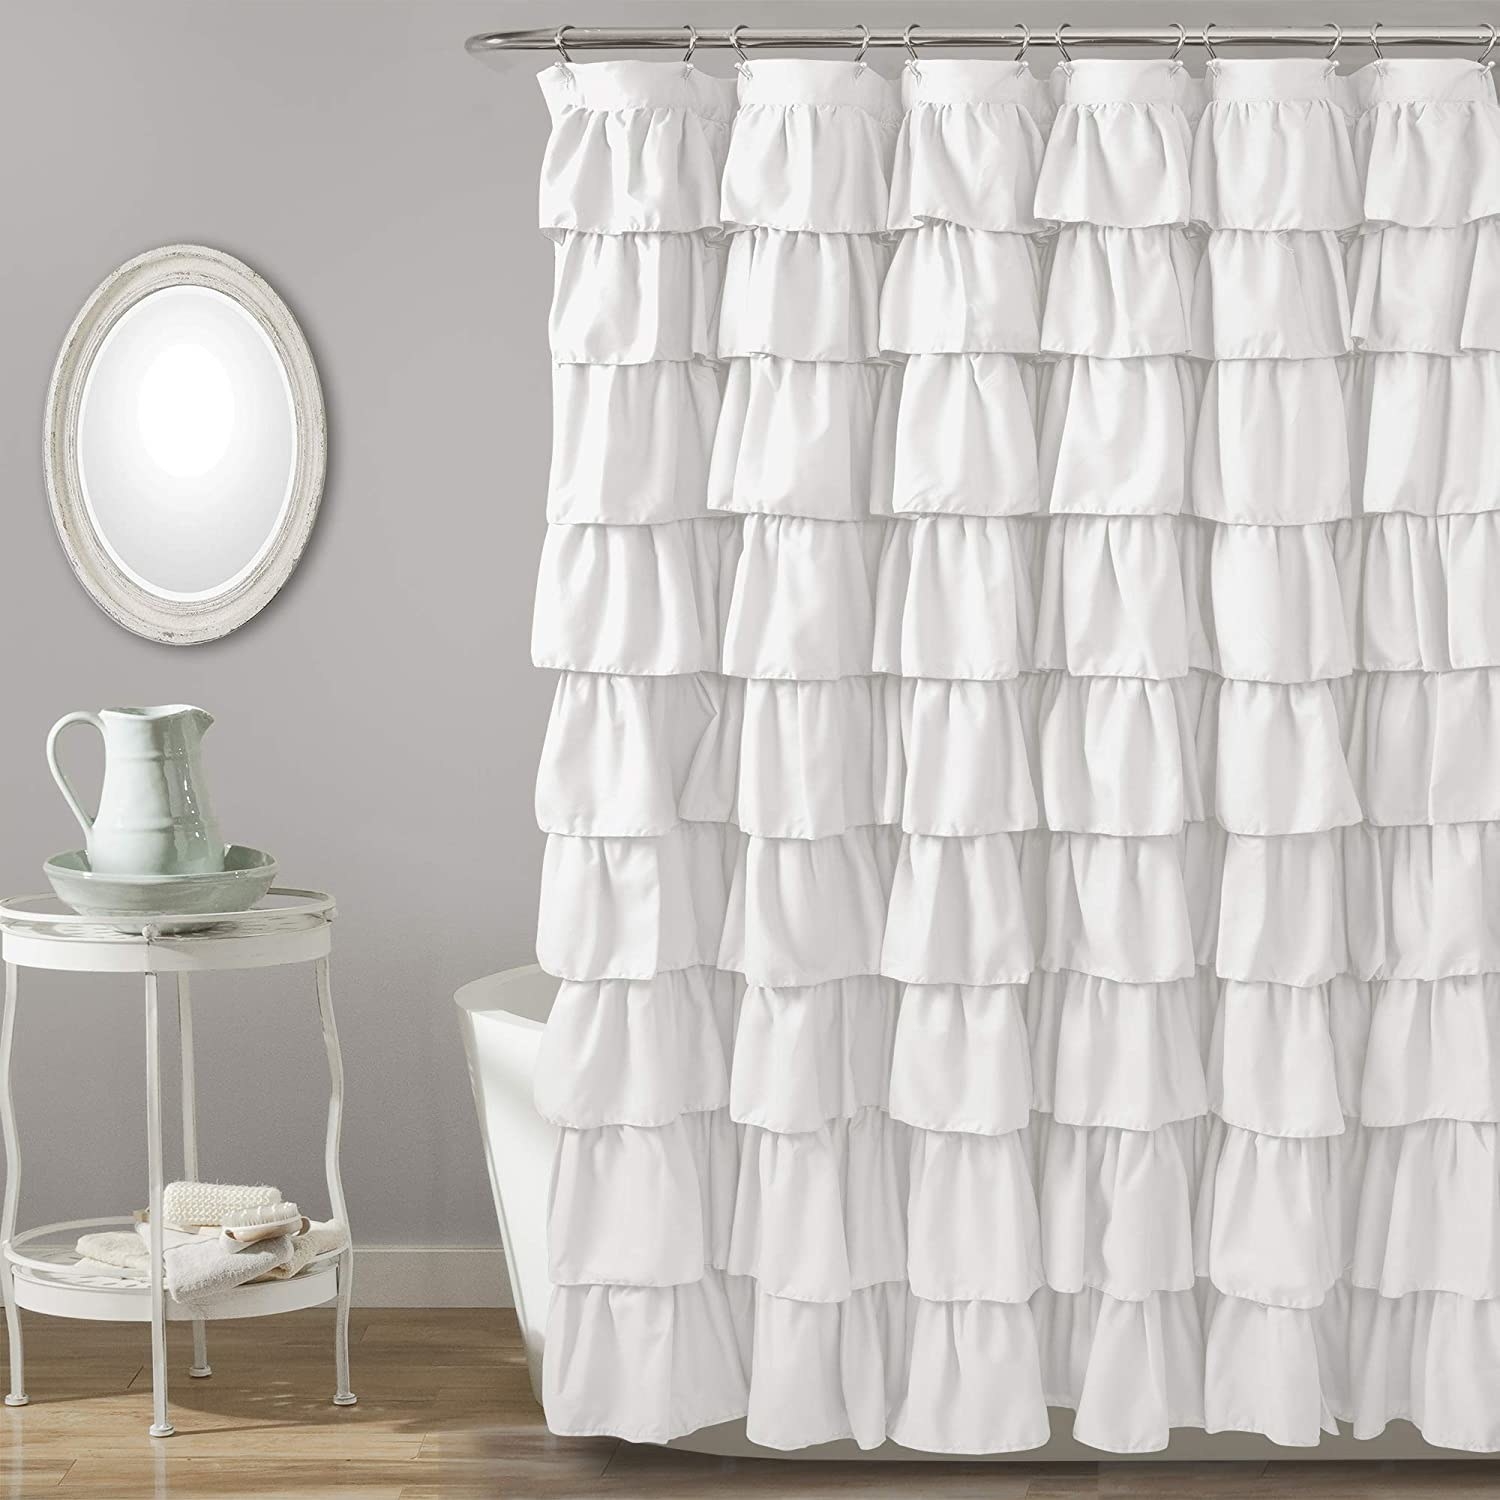 The white ruffled shower curtain